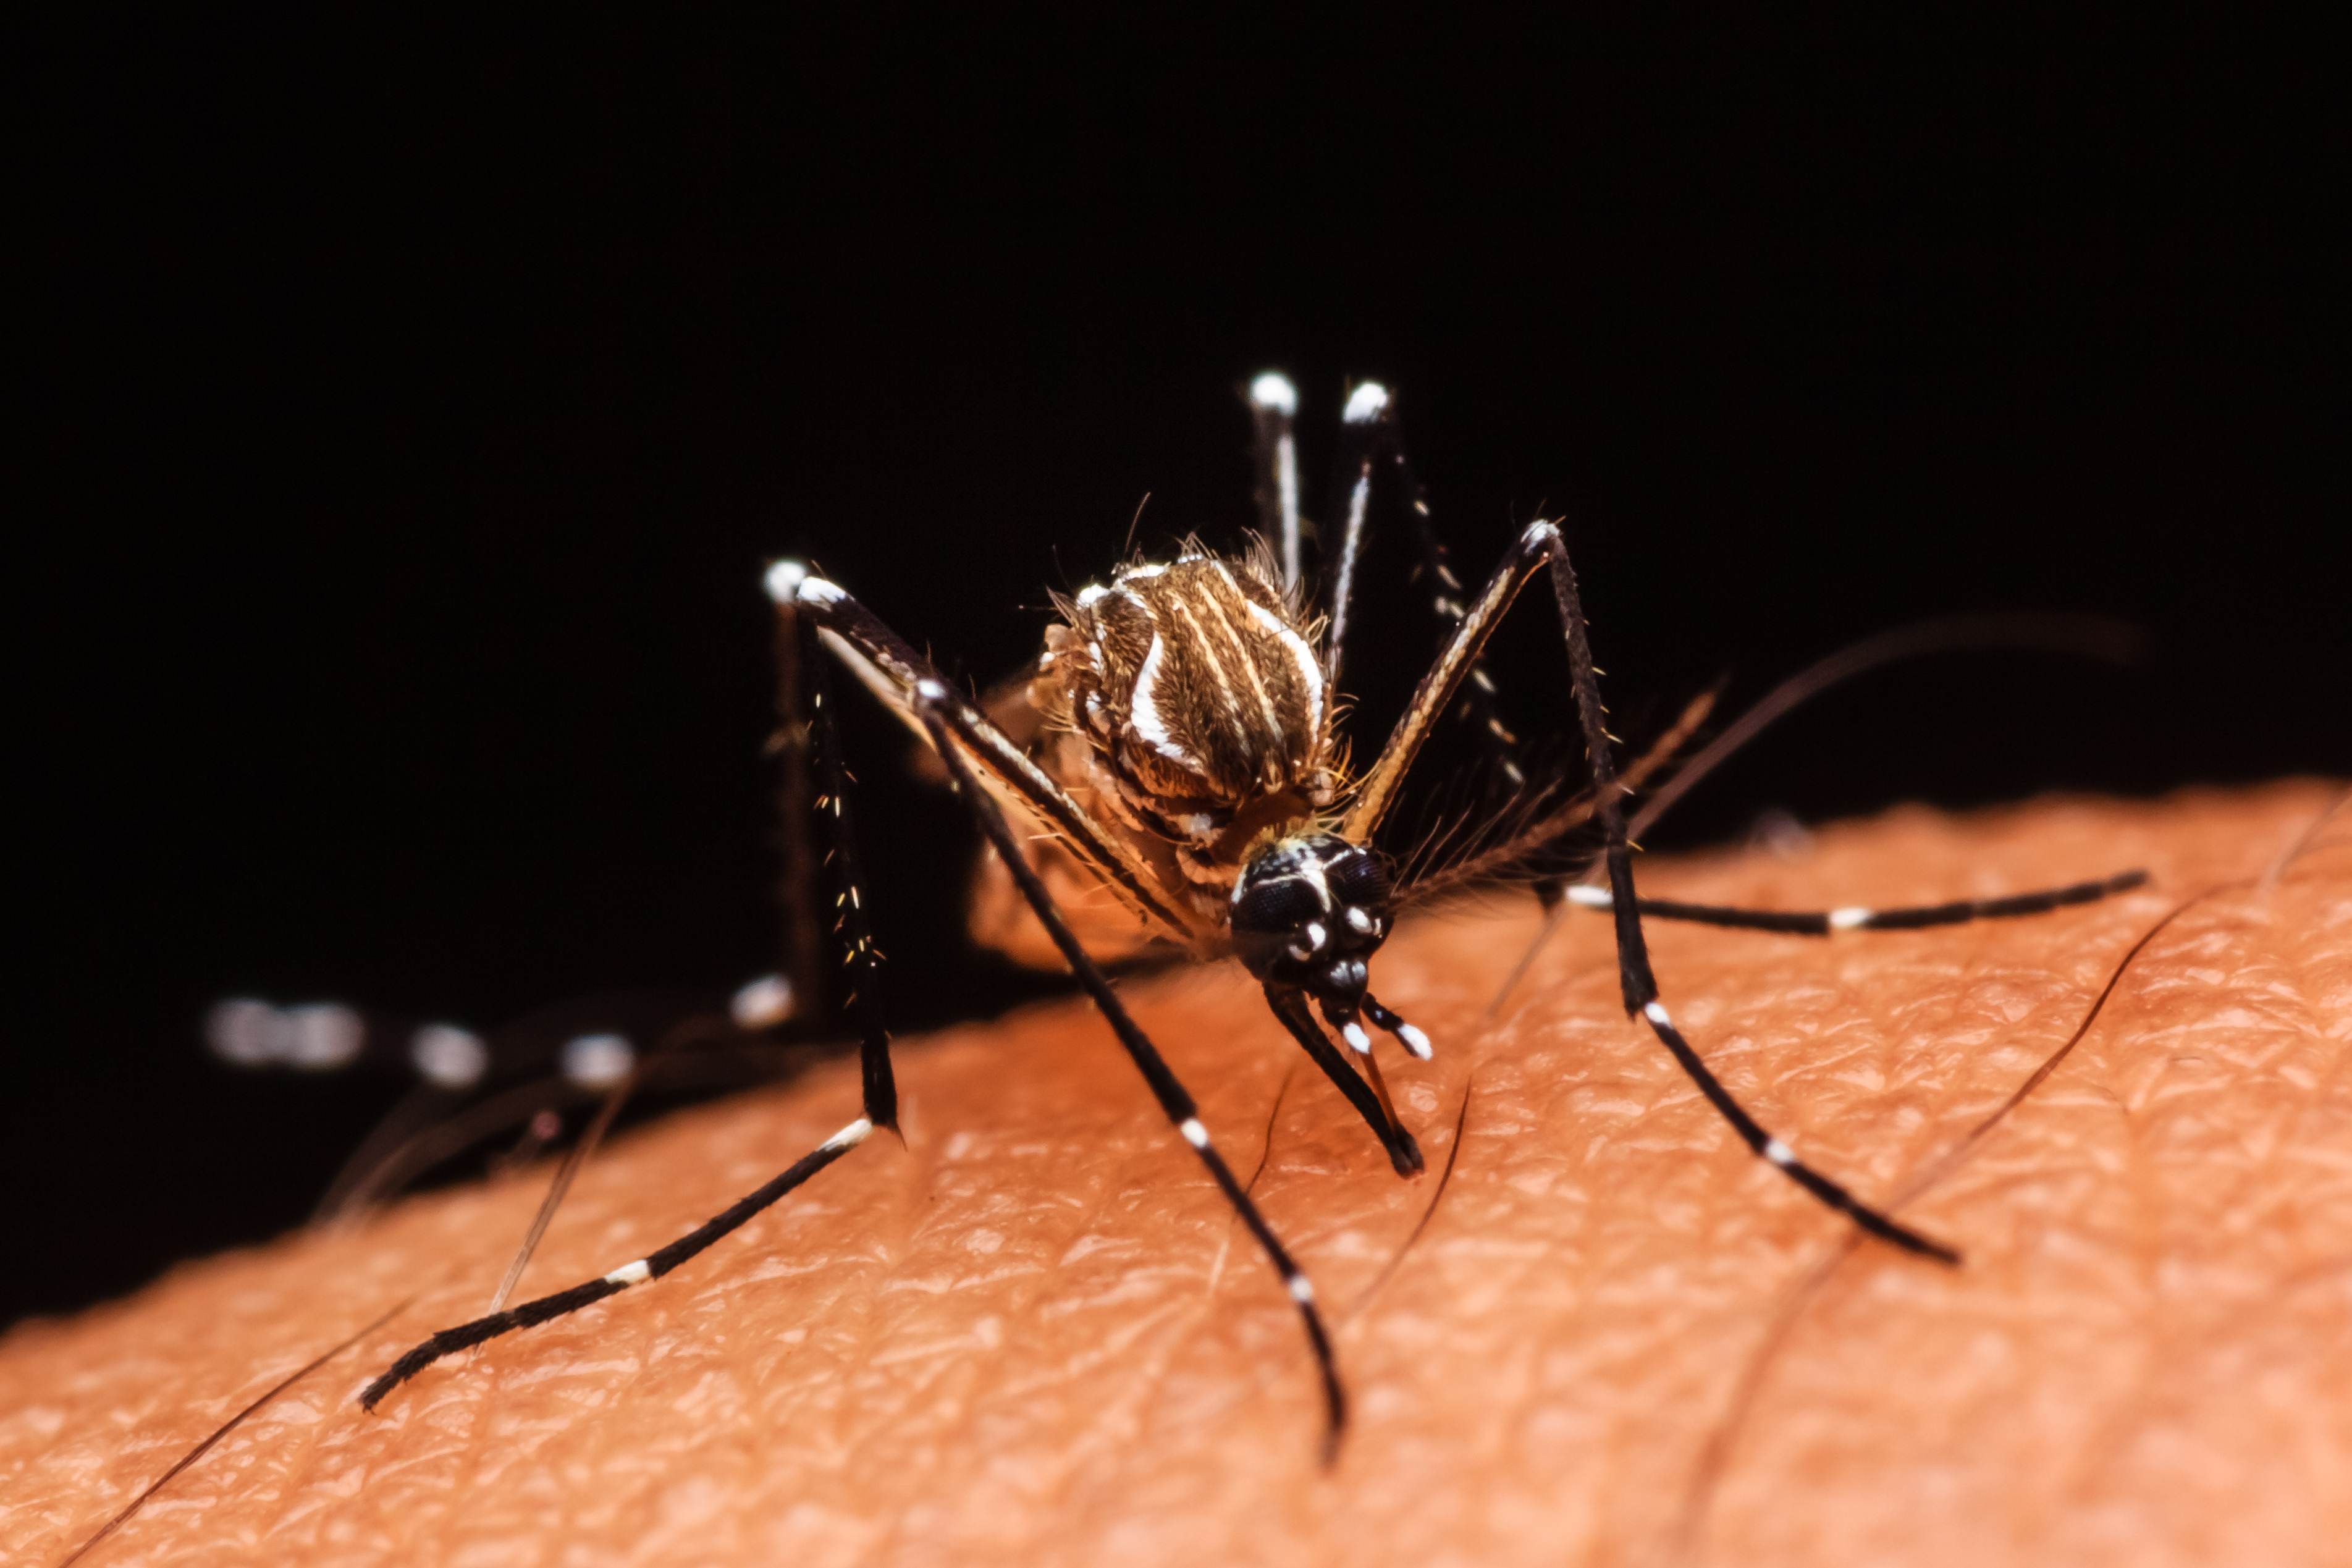     L’épidémie de dengue continue de sévir en Martinique et en Guadeloupe

